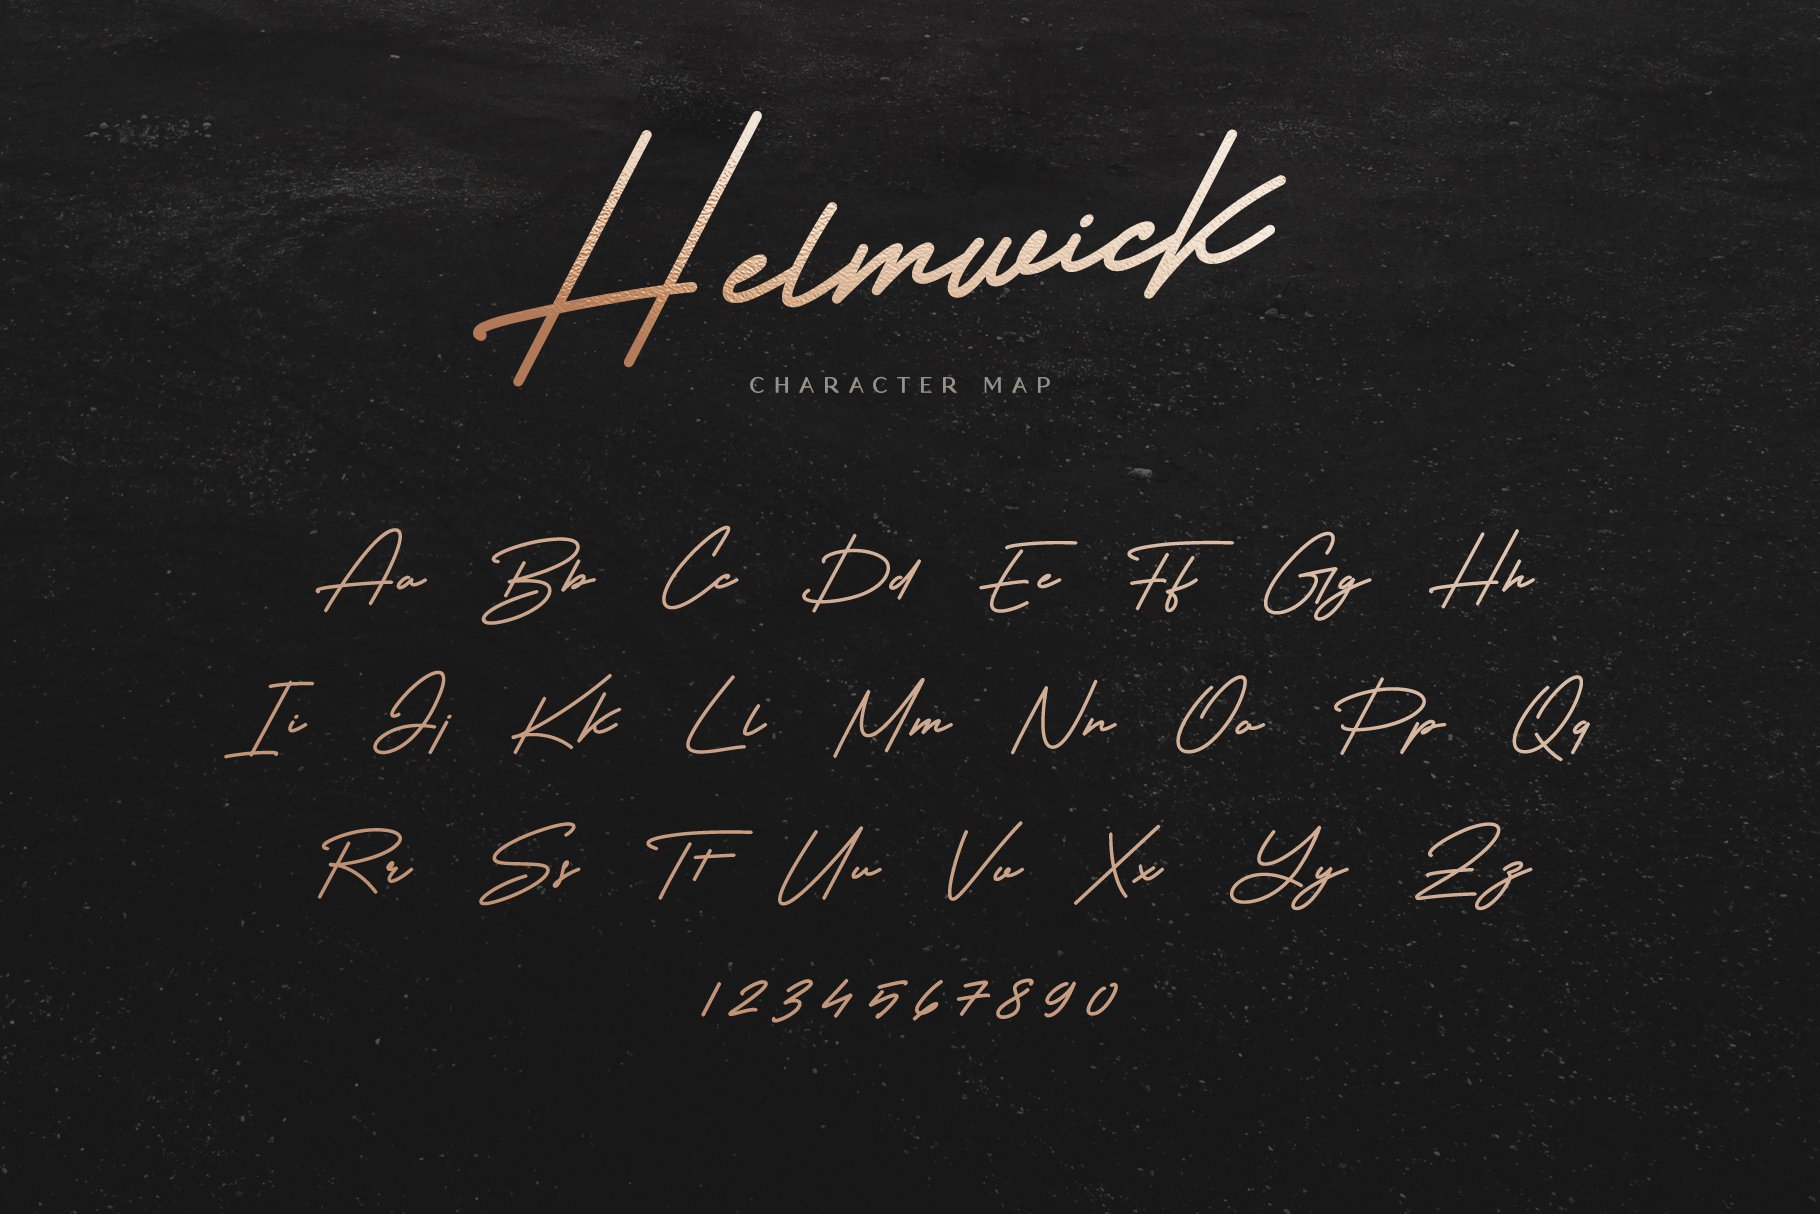 Helmwick